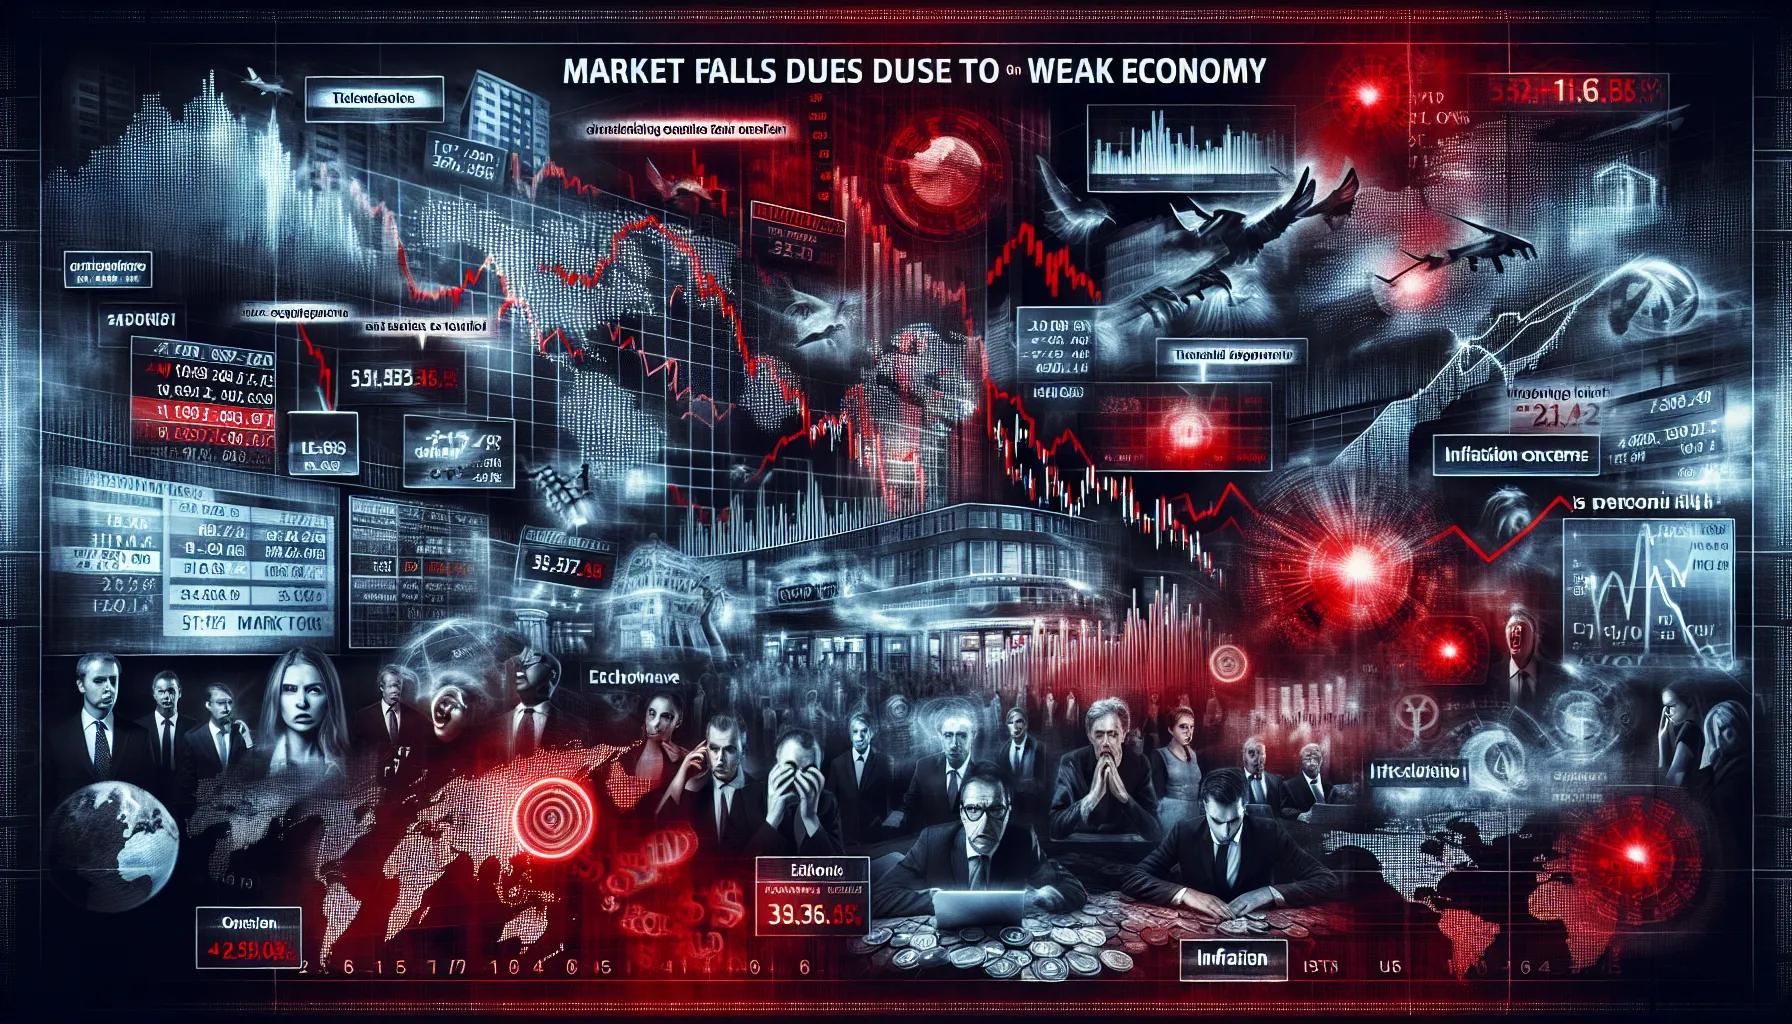 Le marché boursier fléchit face à la faiblesse des données économiques ...